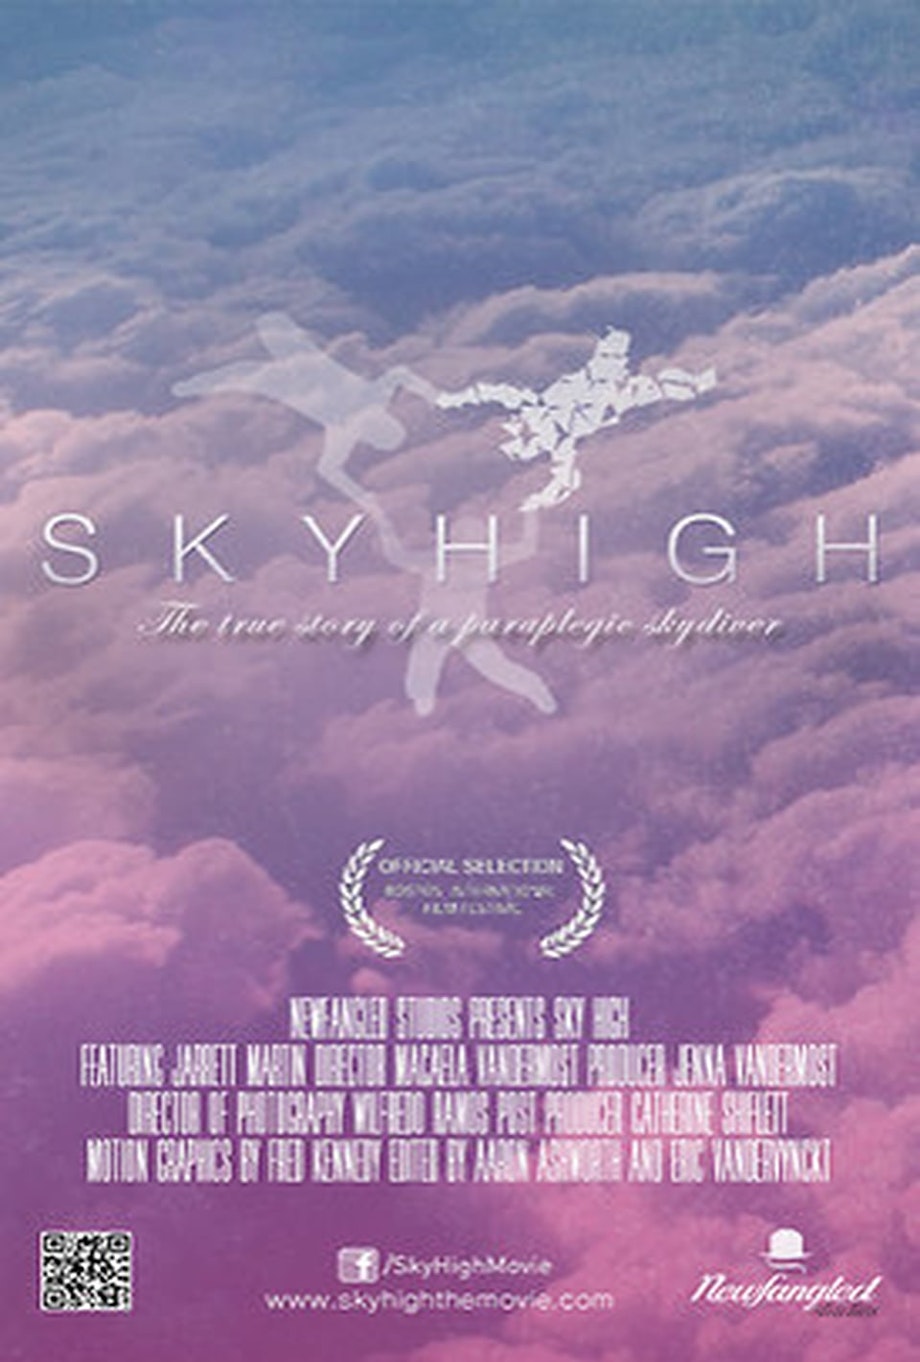 Sky High: The true story of a paraplegic skydiver